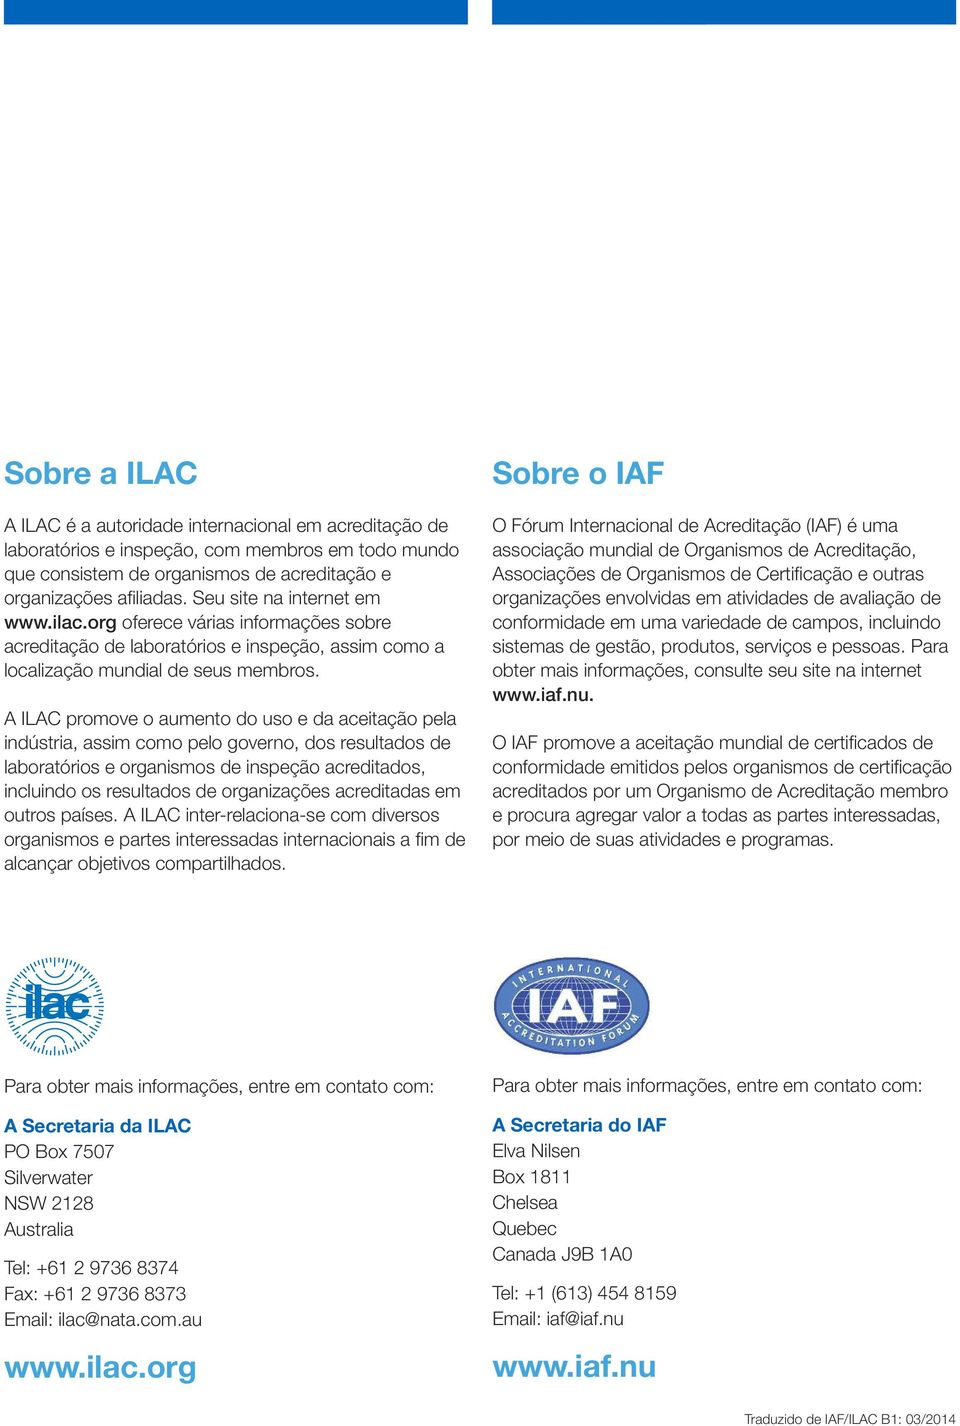 A ILAC promove o aumento do uso e da aceitação pela indústria, assim como pelo governo, dos resultados de laboratórios e organismos de inspeção acreditados, incluindo os resultados de organizações